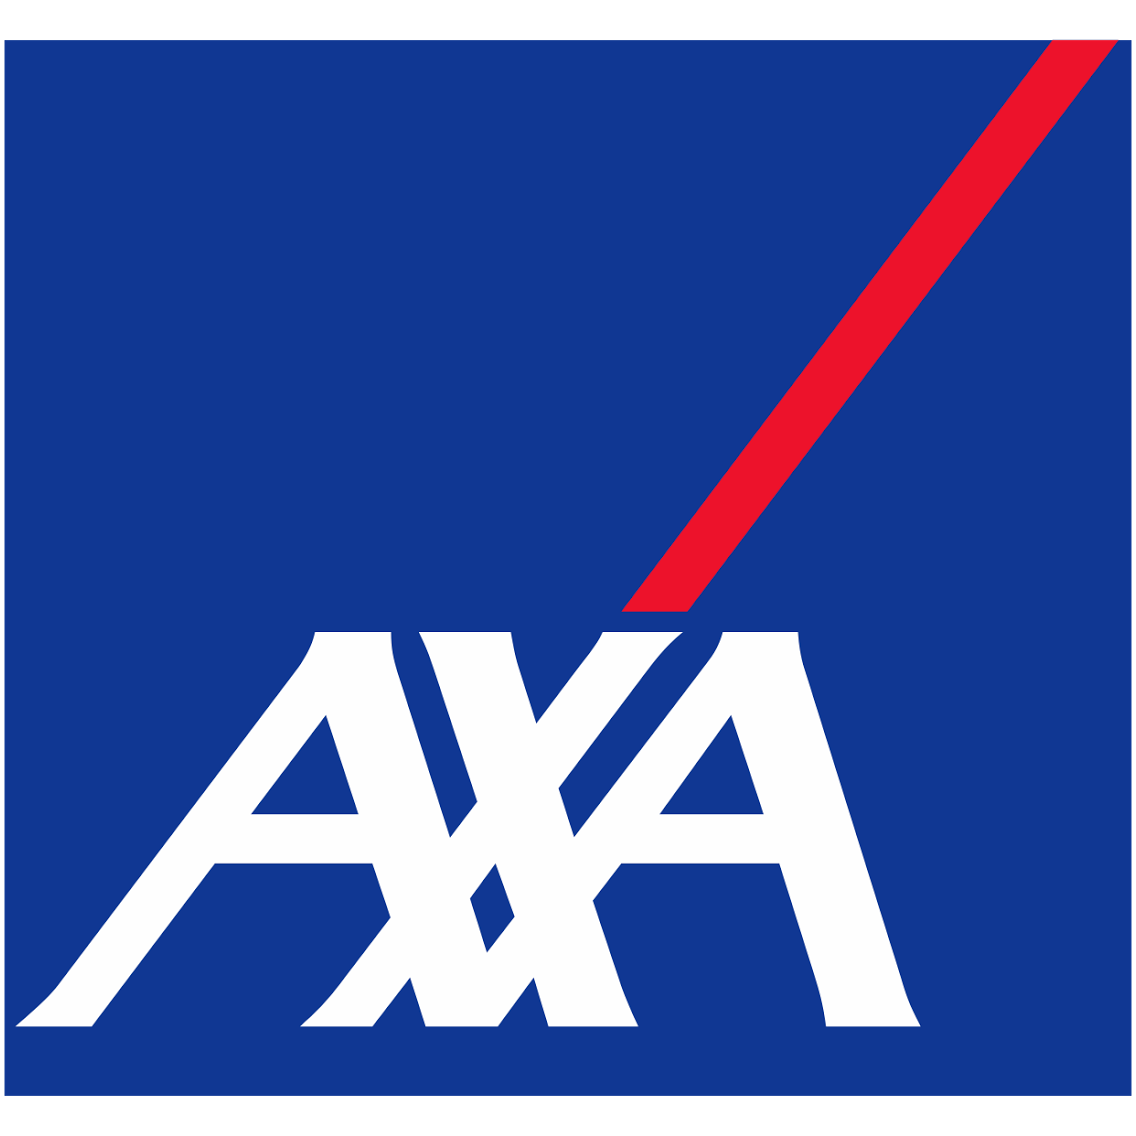 AXA-vector-logo.png